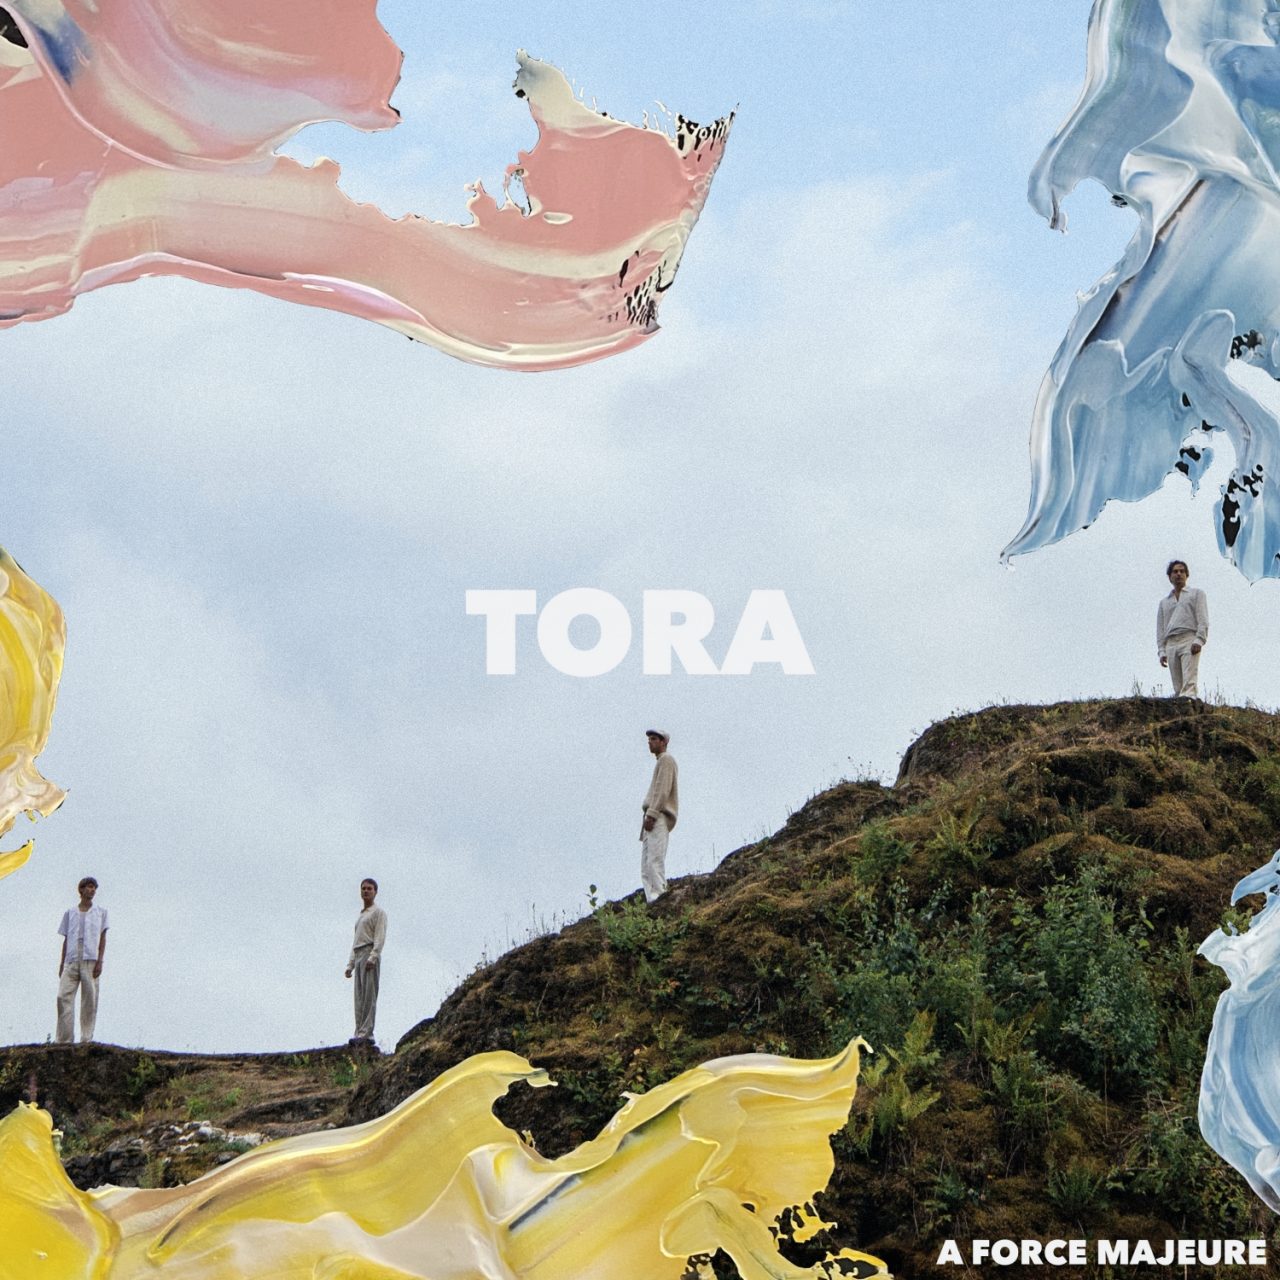 Das Albumcover "A Force Majeure" von Tora zeigt die Bandmitglieder, wie sie auf einem grasbewachsenen Hügel stehen. In den Ecken des Bildes sind verschiedene Pinselstriche mit Farbe zu sehen.